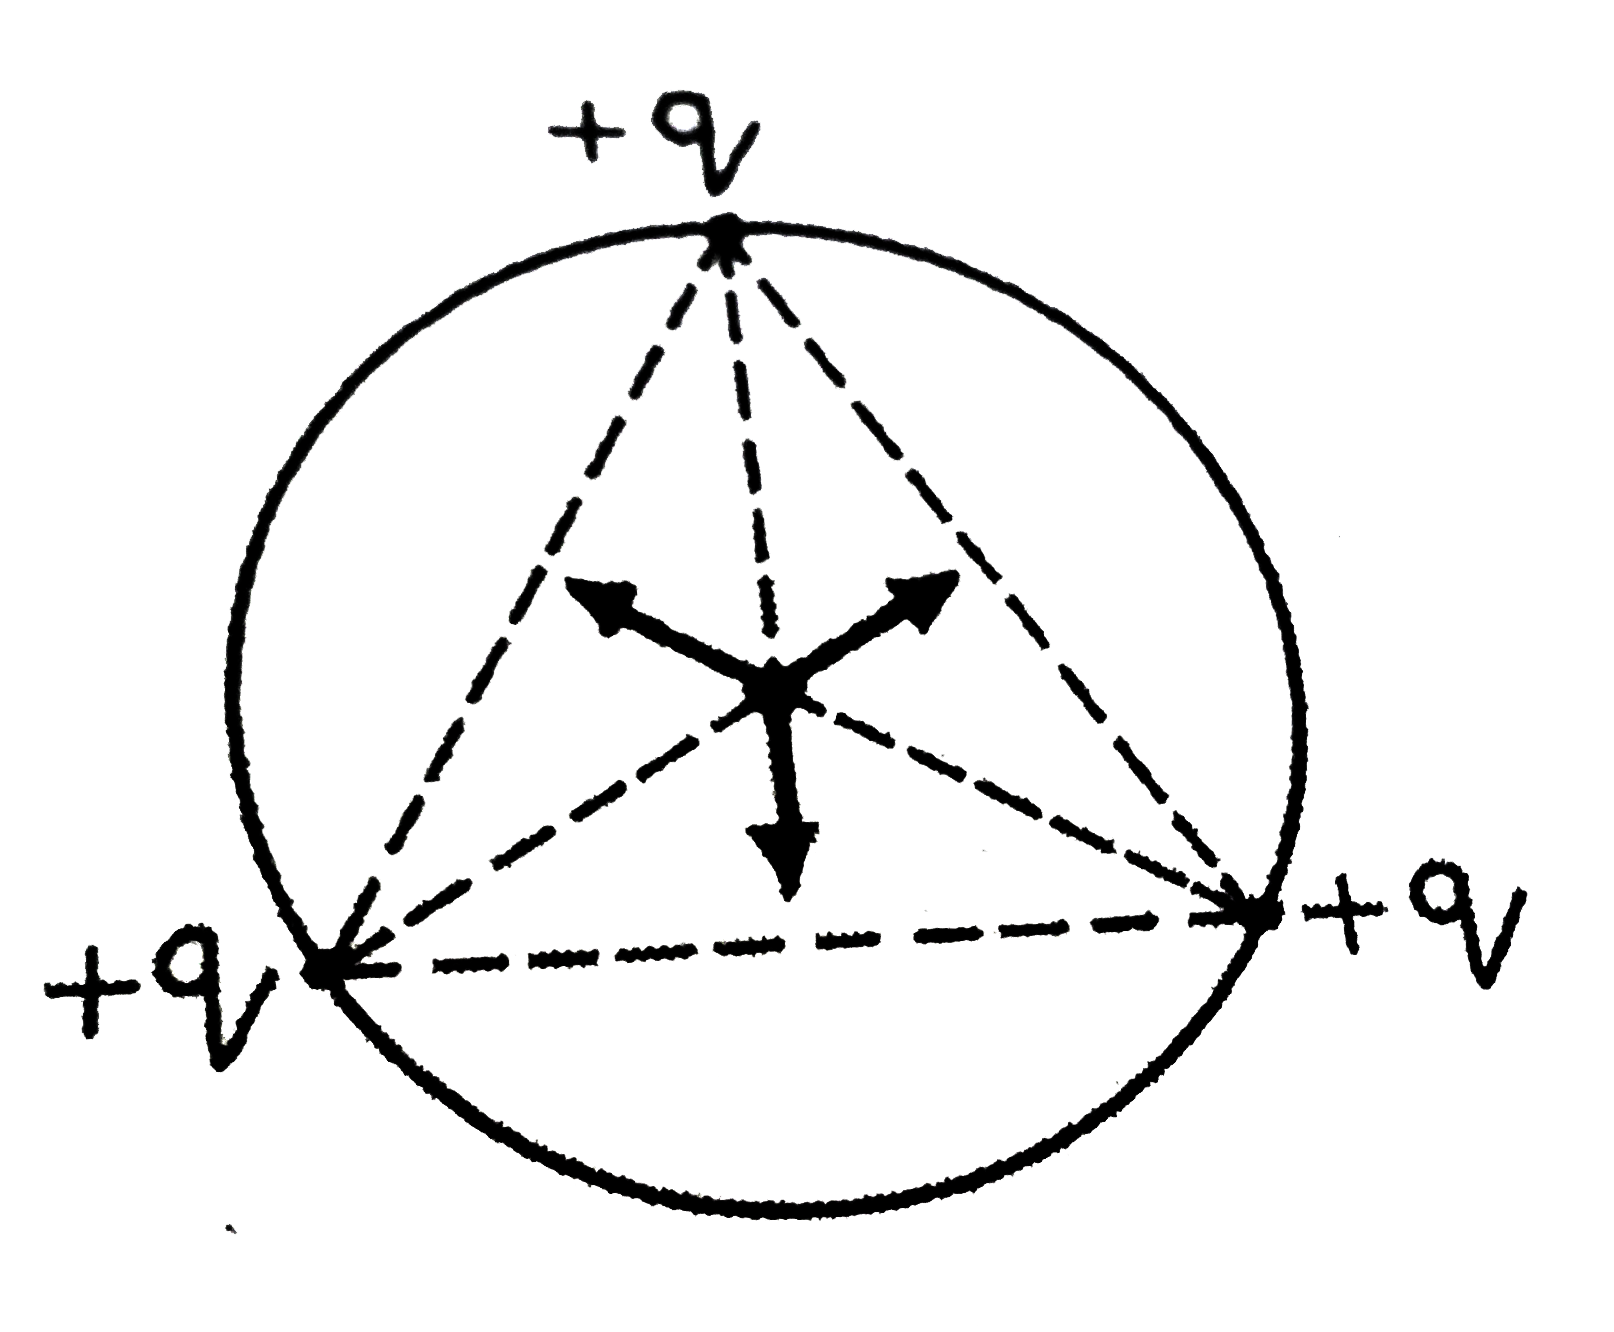 r मीटर त्रिज्या के वृत्त की परिधि पर स्थित तीन बिंदु-आवेश, प्रत्येक +q क्यूलॉम, एक समबाहु त्रिभुज बनाते है (चित्र)। वृत्त के केंद्र पर वैधुत क्षेत्र की तीव्रता तथा वैधुत विभव ज्ञात कीजिए ।